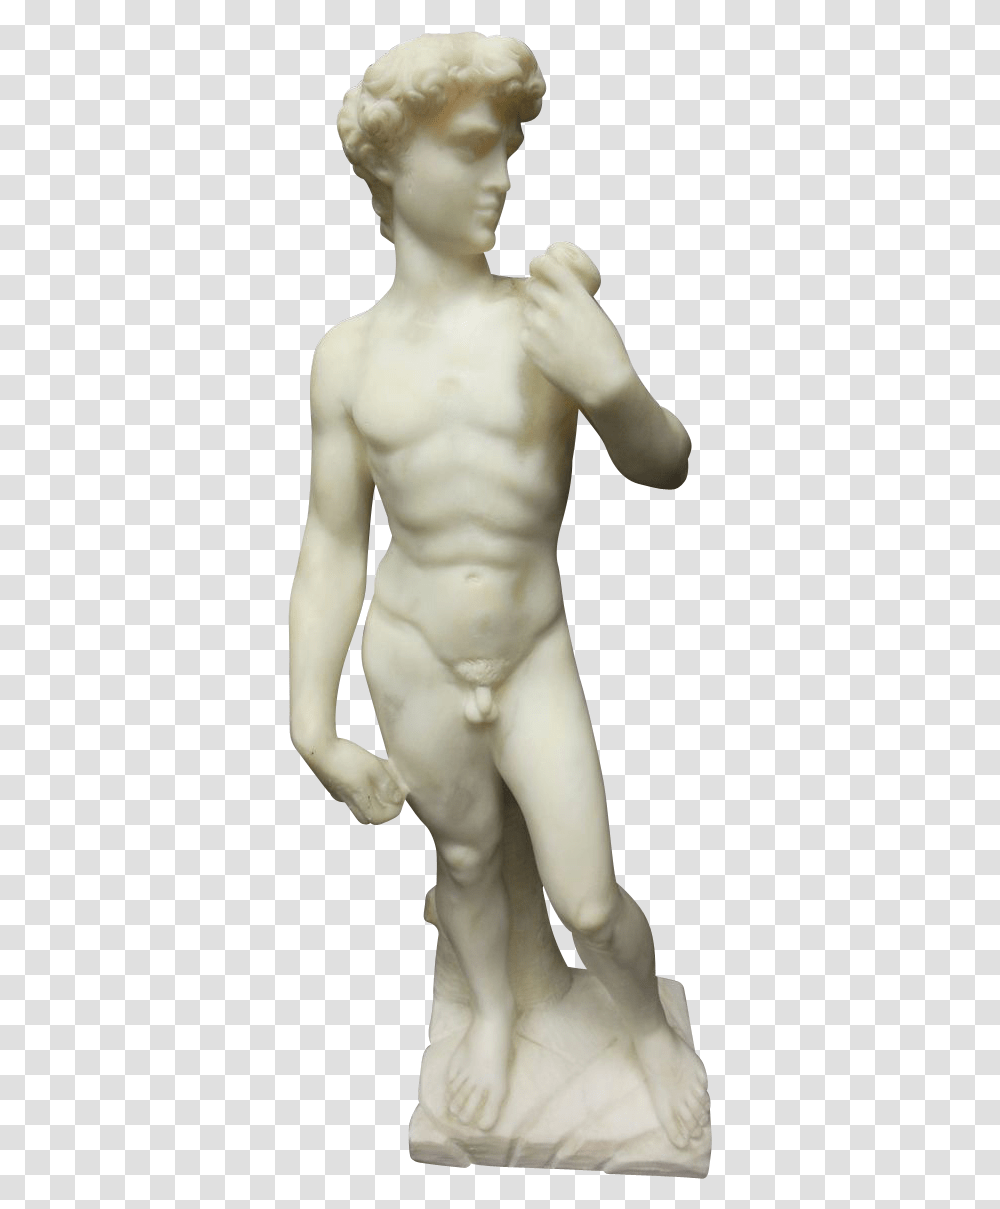 Statue Of David Sculpture David, Torso, Person, Human Transparent Png